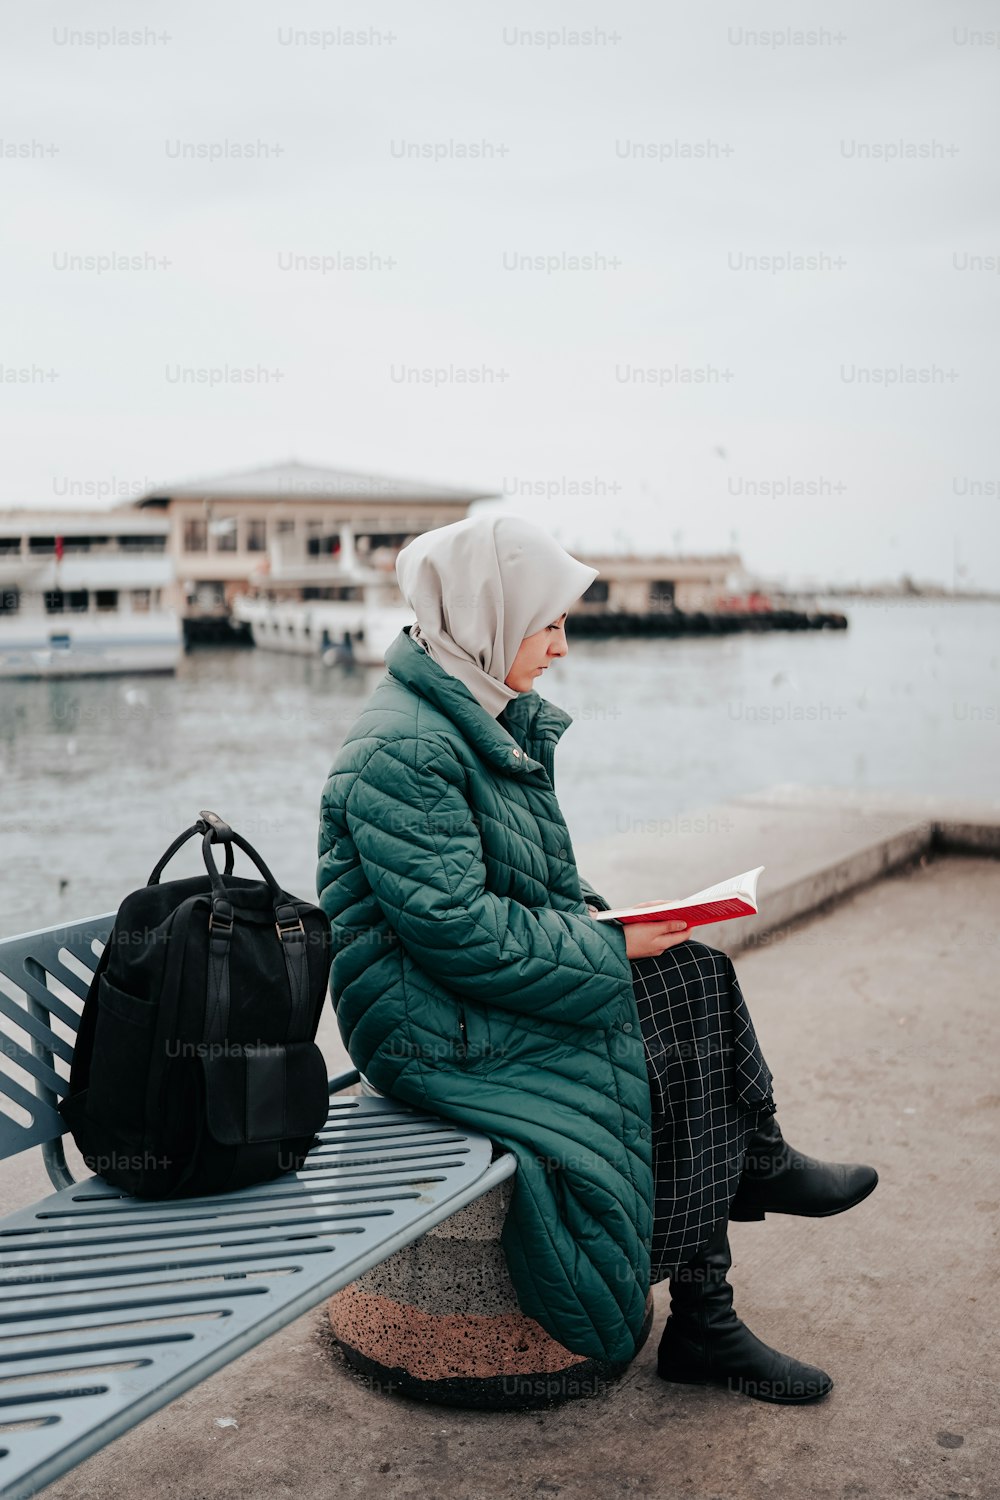 Eine Frau sitzt auf einer Bank und liest ein Buch